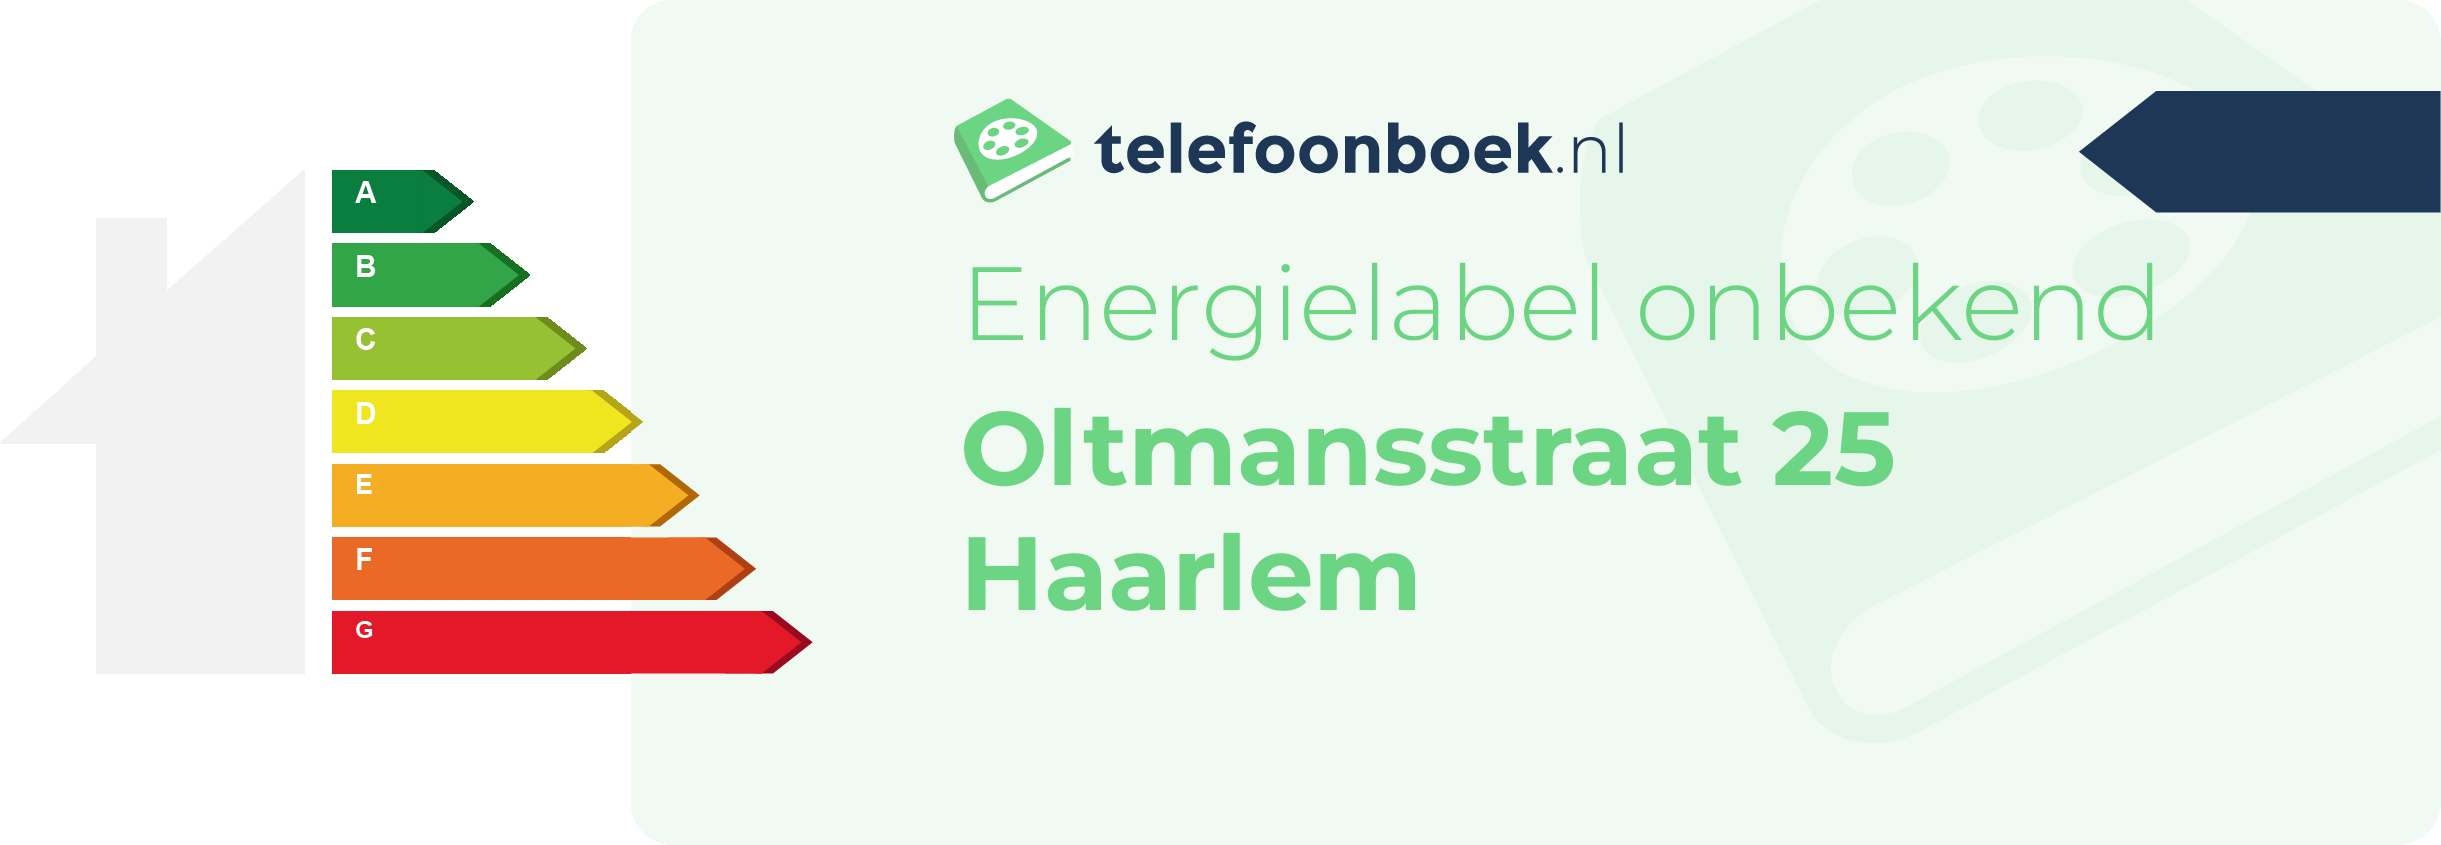 Energielabel Oltmansstraat 25 Haarlem